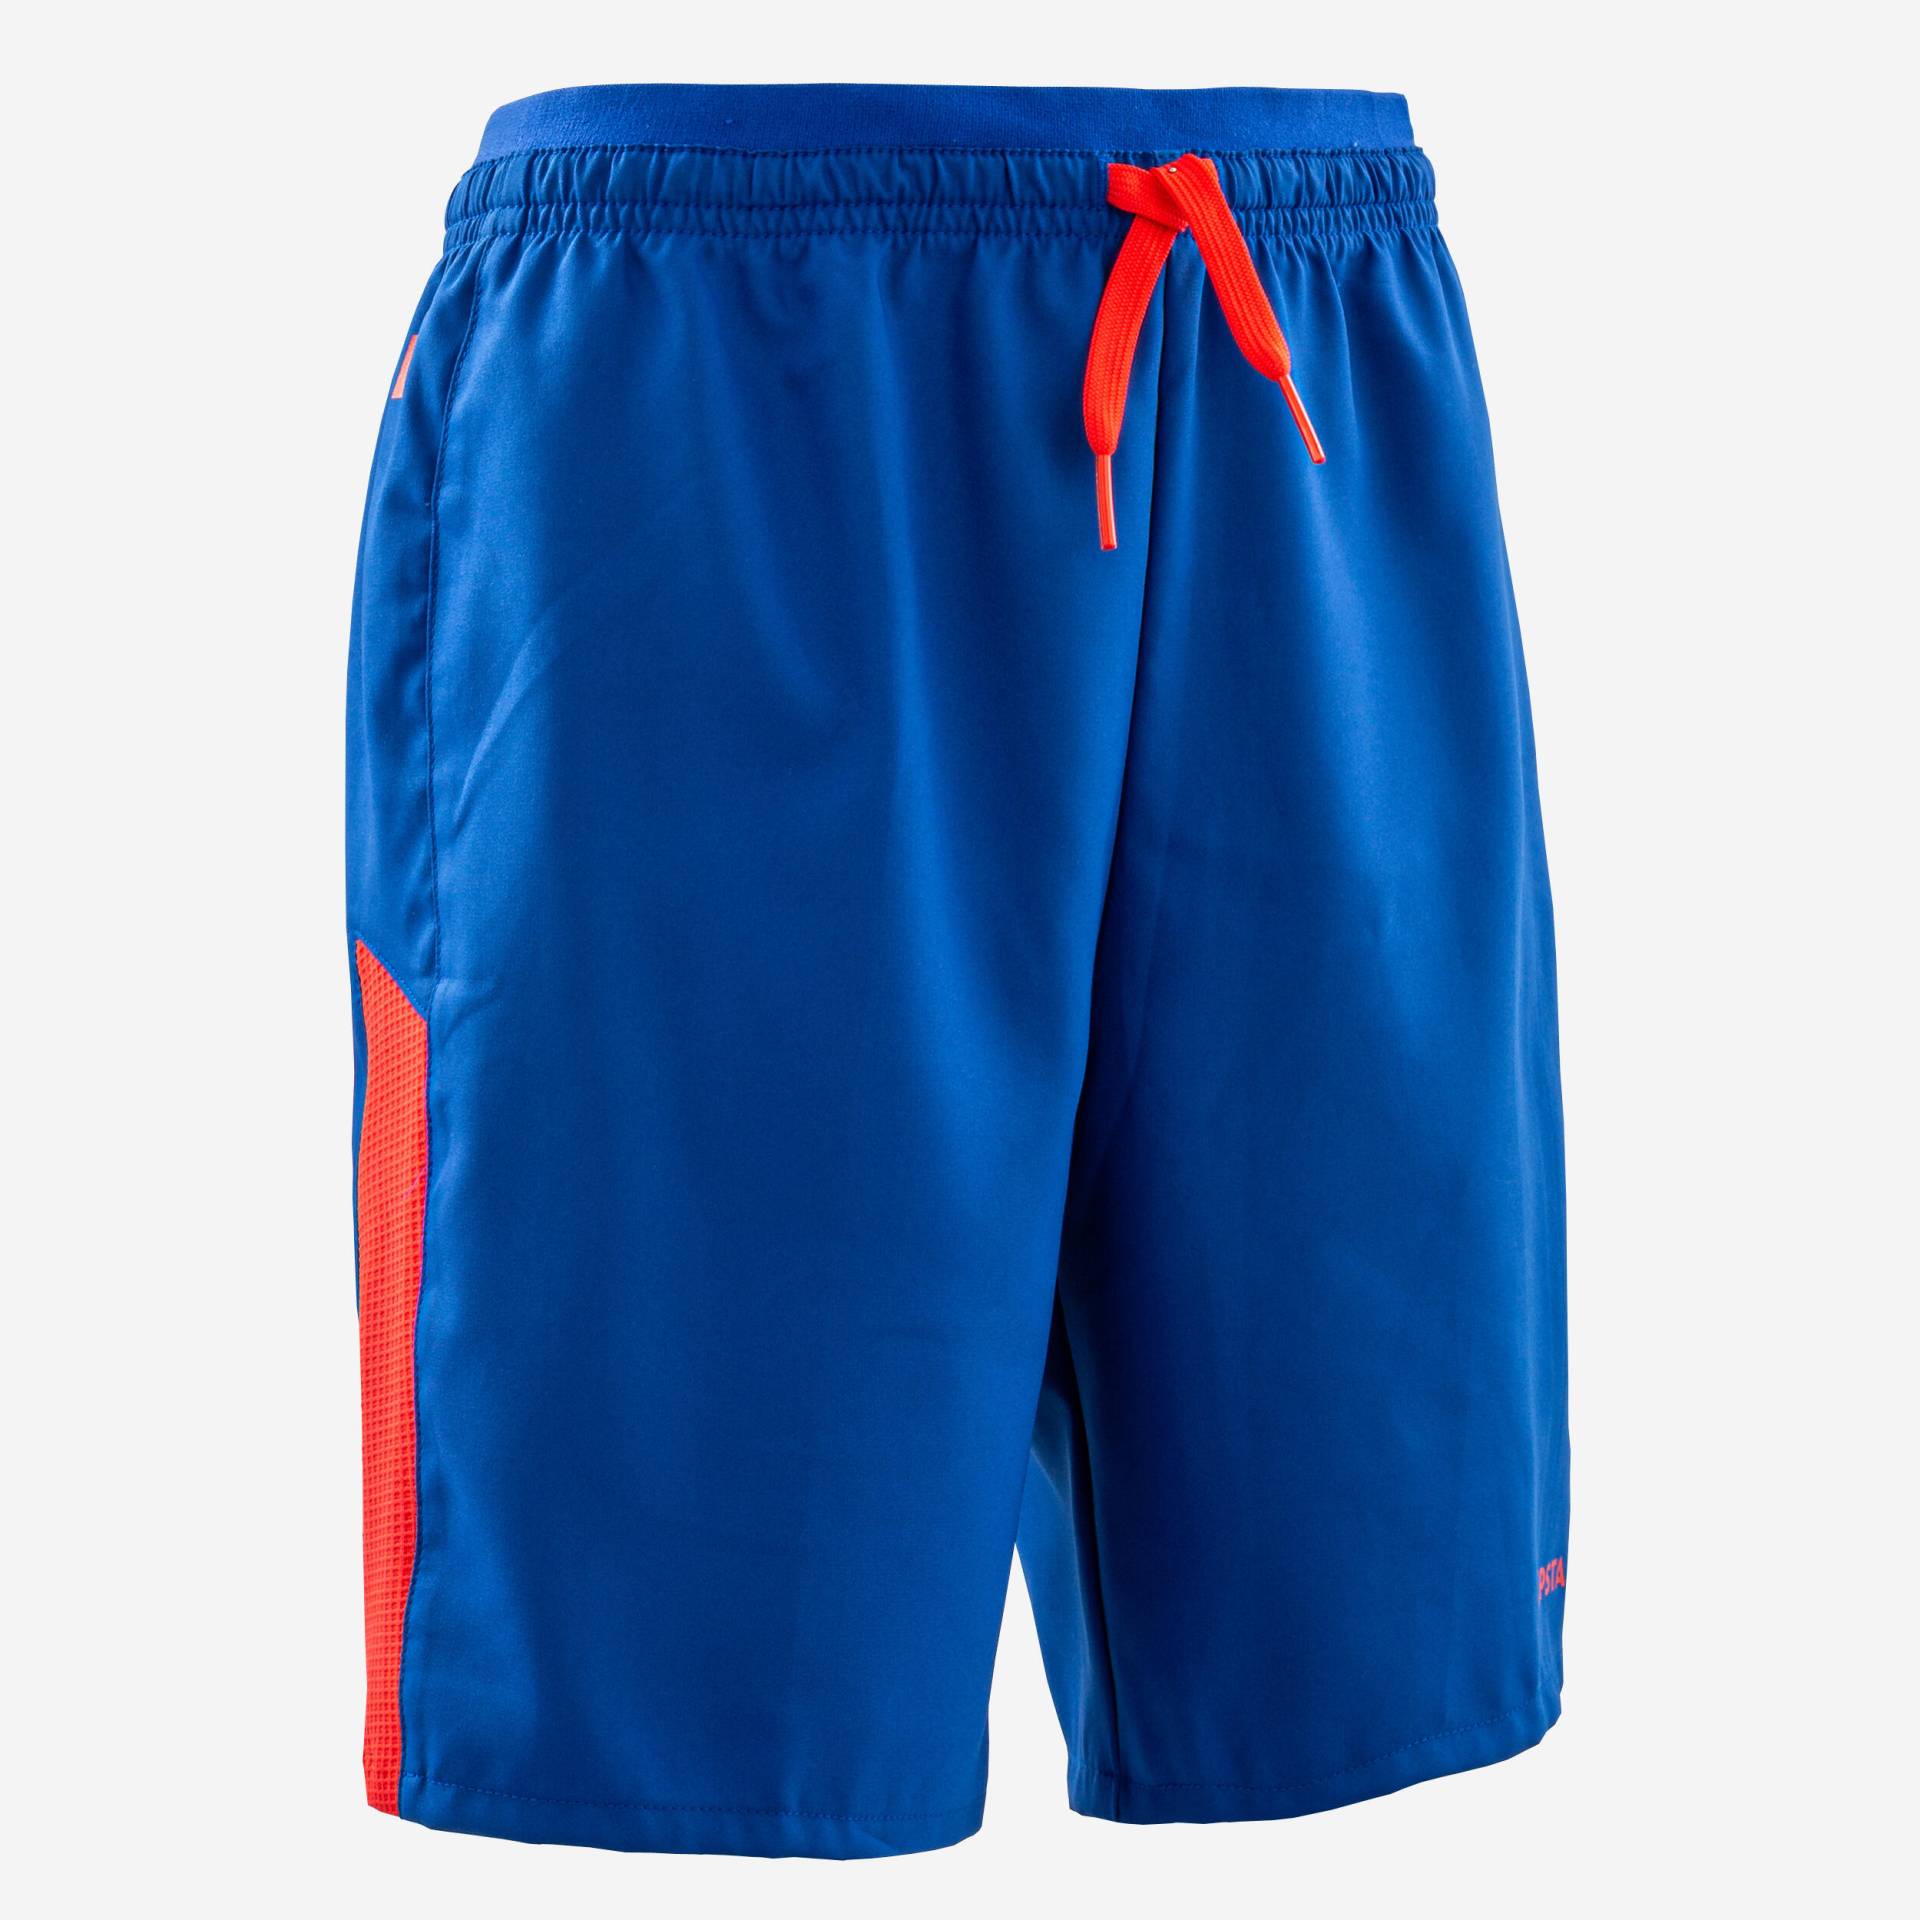 Kinder Fussball Shorts - Viralto Axton blau/orange von KIPSTA